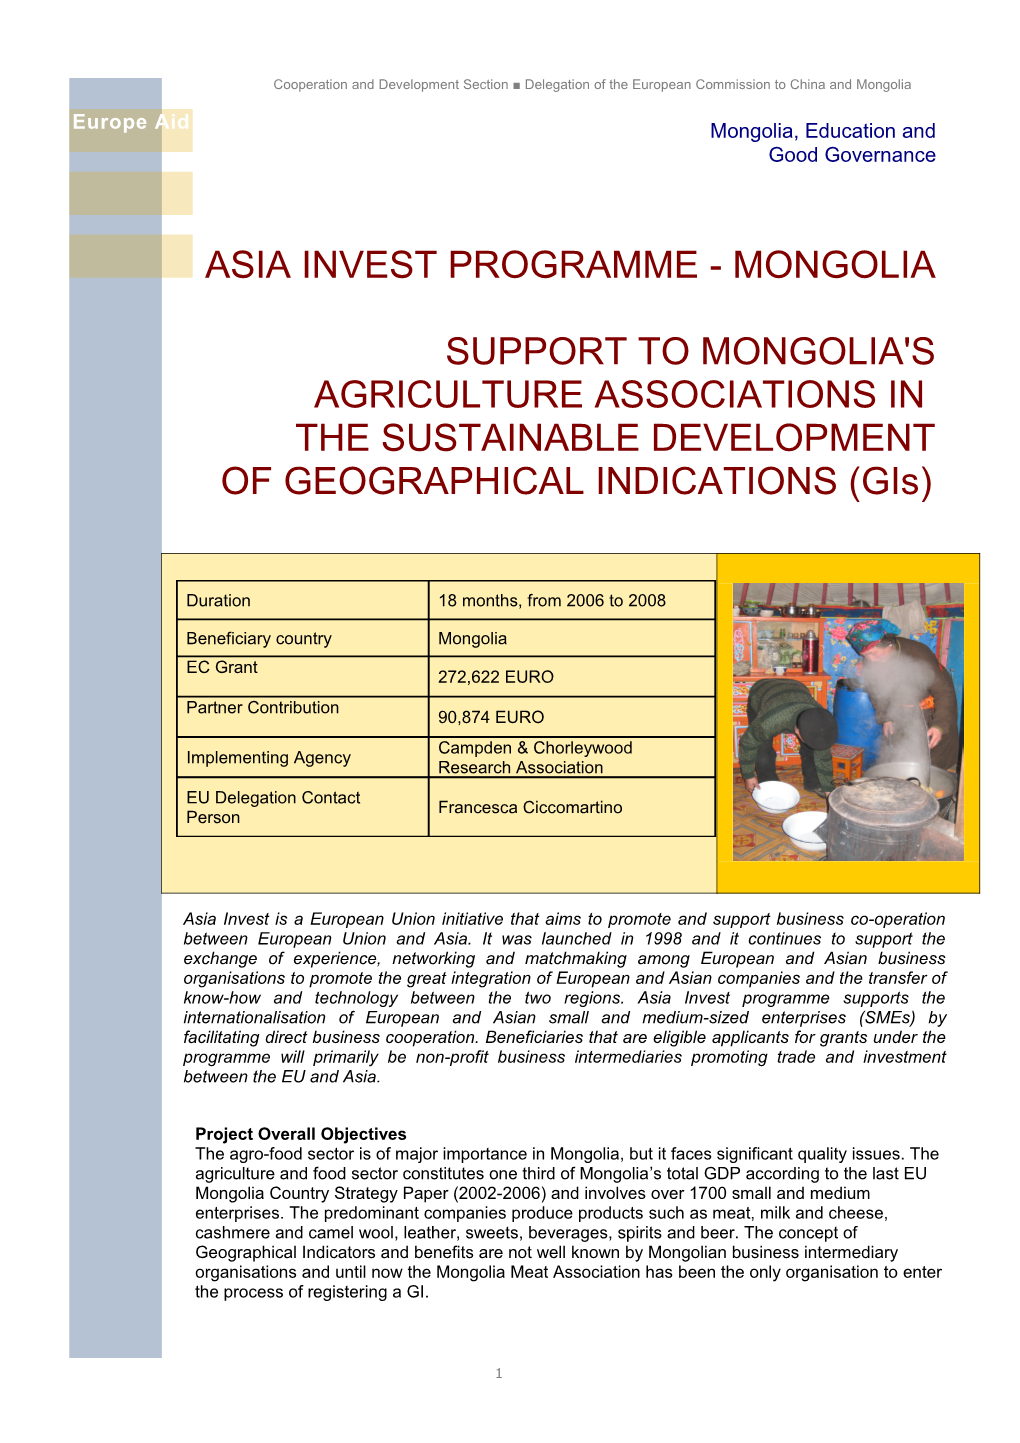 Mongolia, Education and Good Governance